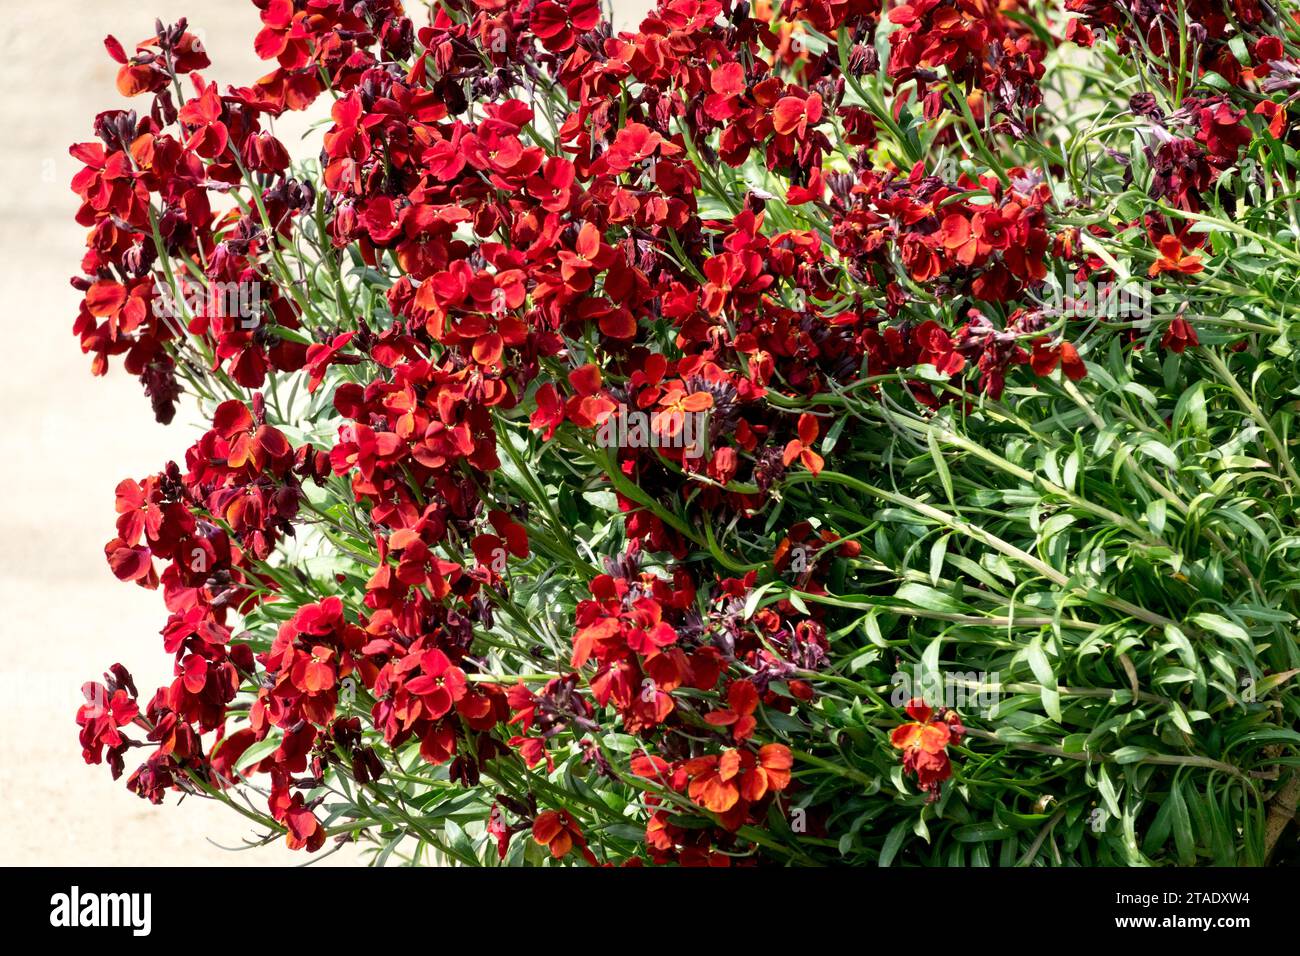 Flowerbed, bloody, red, Erysimum cheiri, Common Wallflower, plant Stock Photo